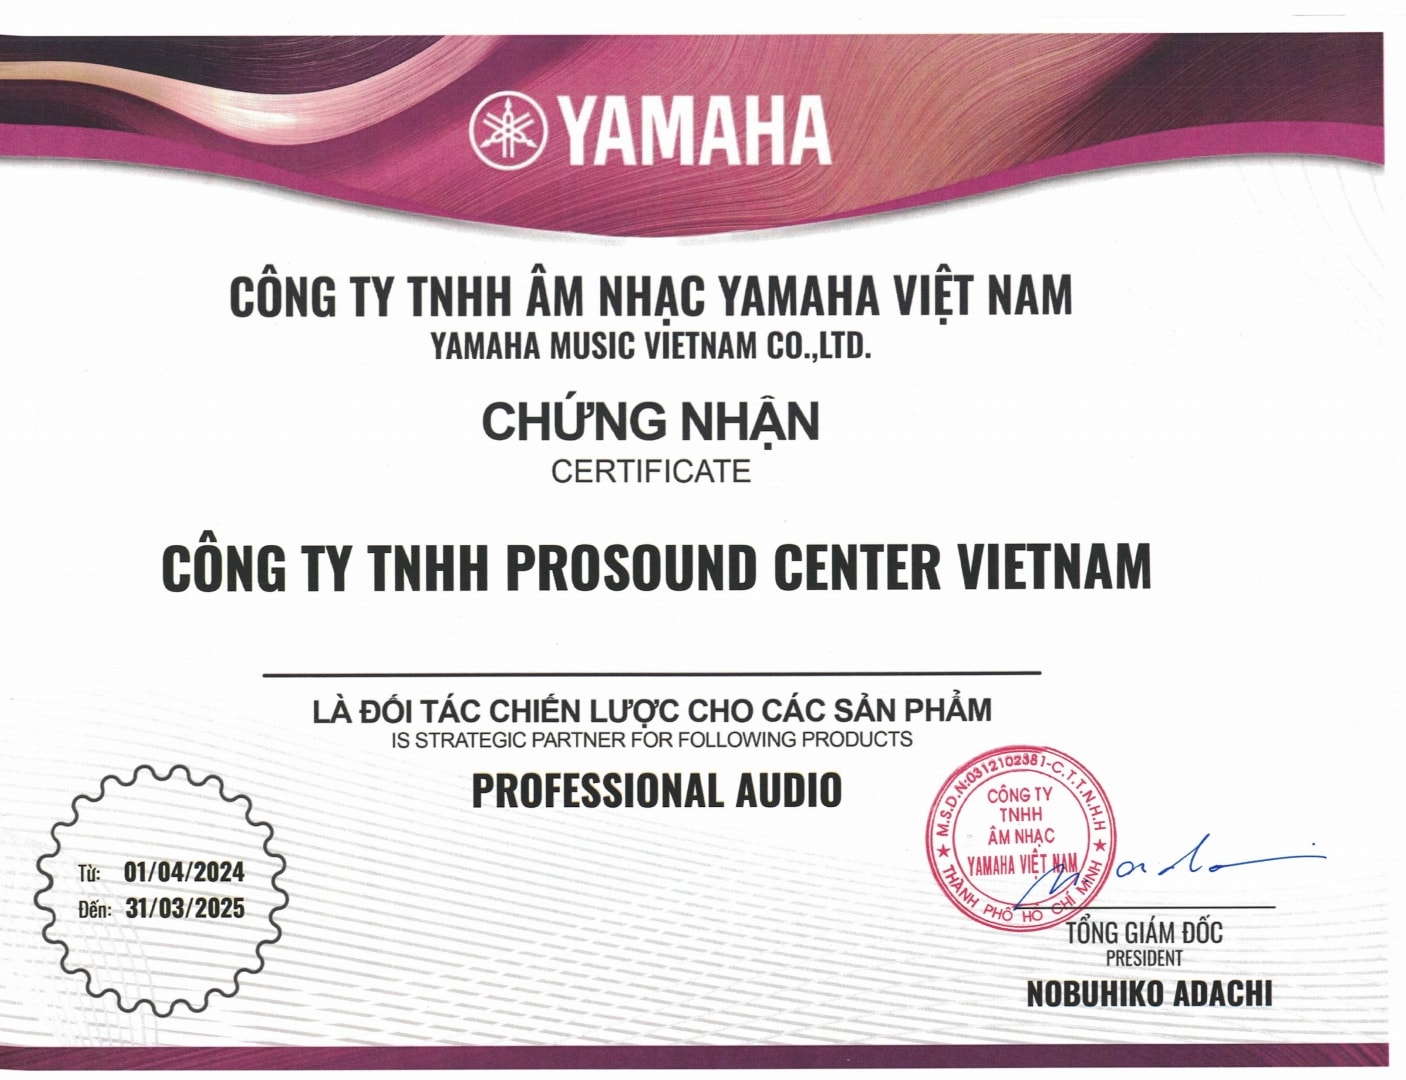 Đối tác chiến lược với Prosound Center Vietnam để phân phối dòng sản phẩm âm thanh chuyên nghiệp